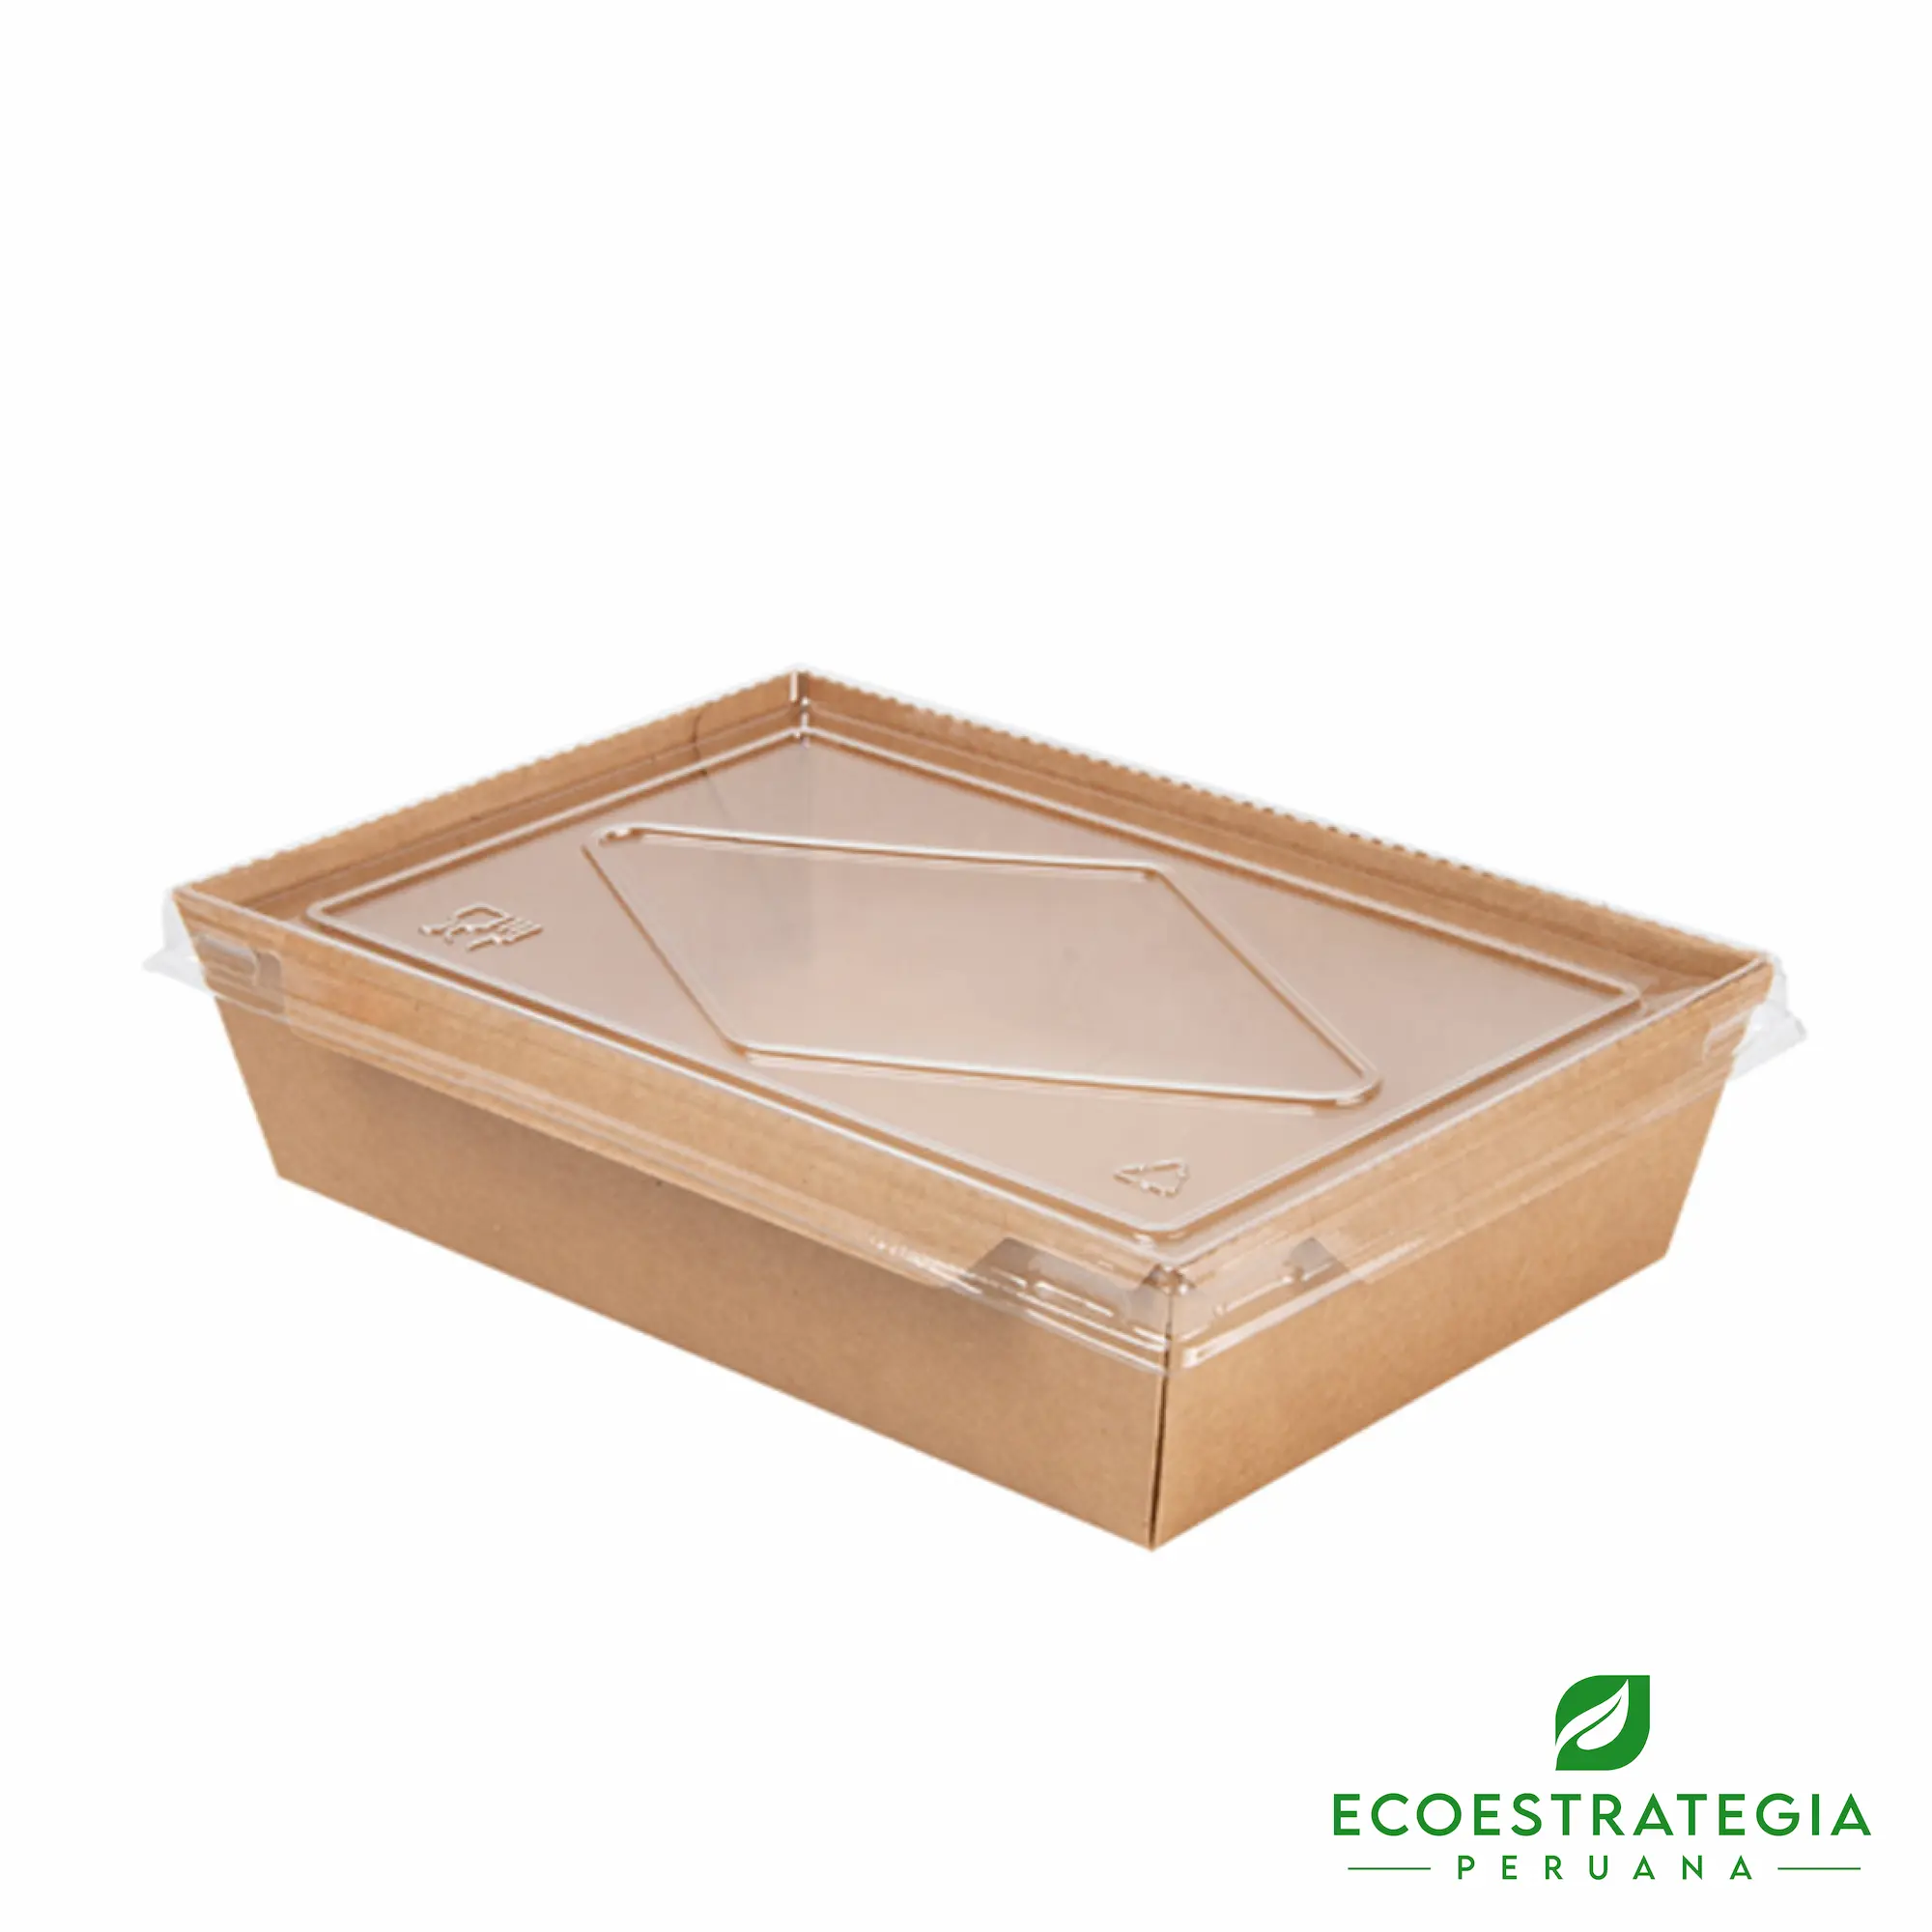 Esta bandeja biodegradable está hecho de cartón Kraft y tiene una capacidad de 1200ml. Envases descartables con gramaje ideal, cotiza tus tapers ecológicos.